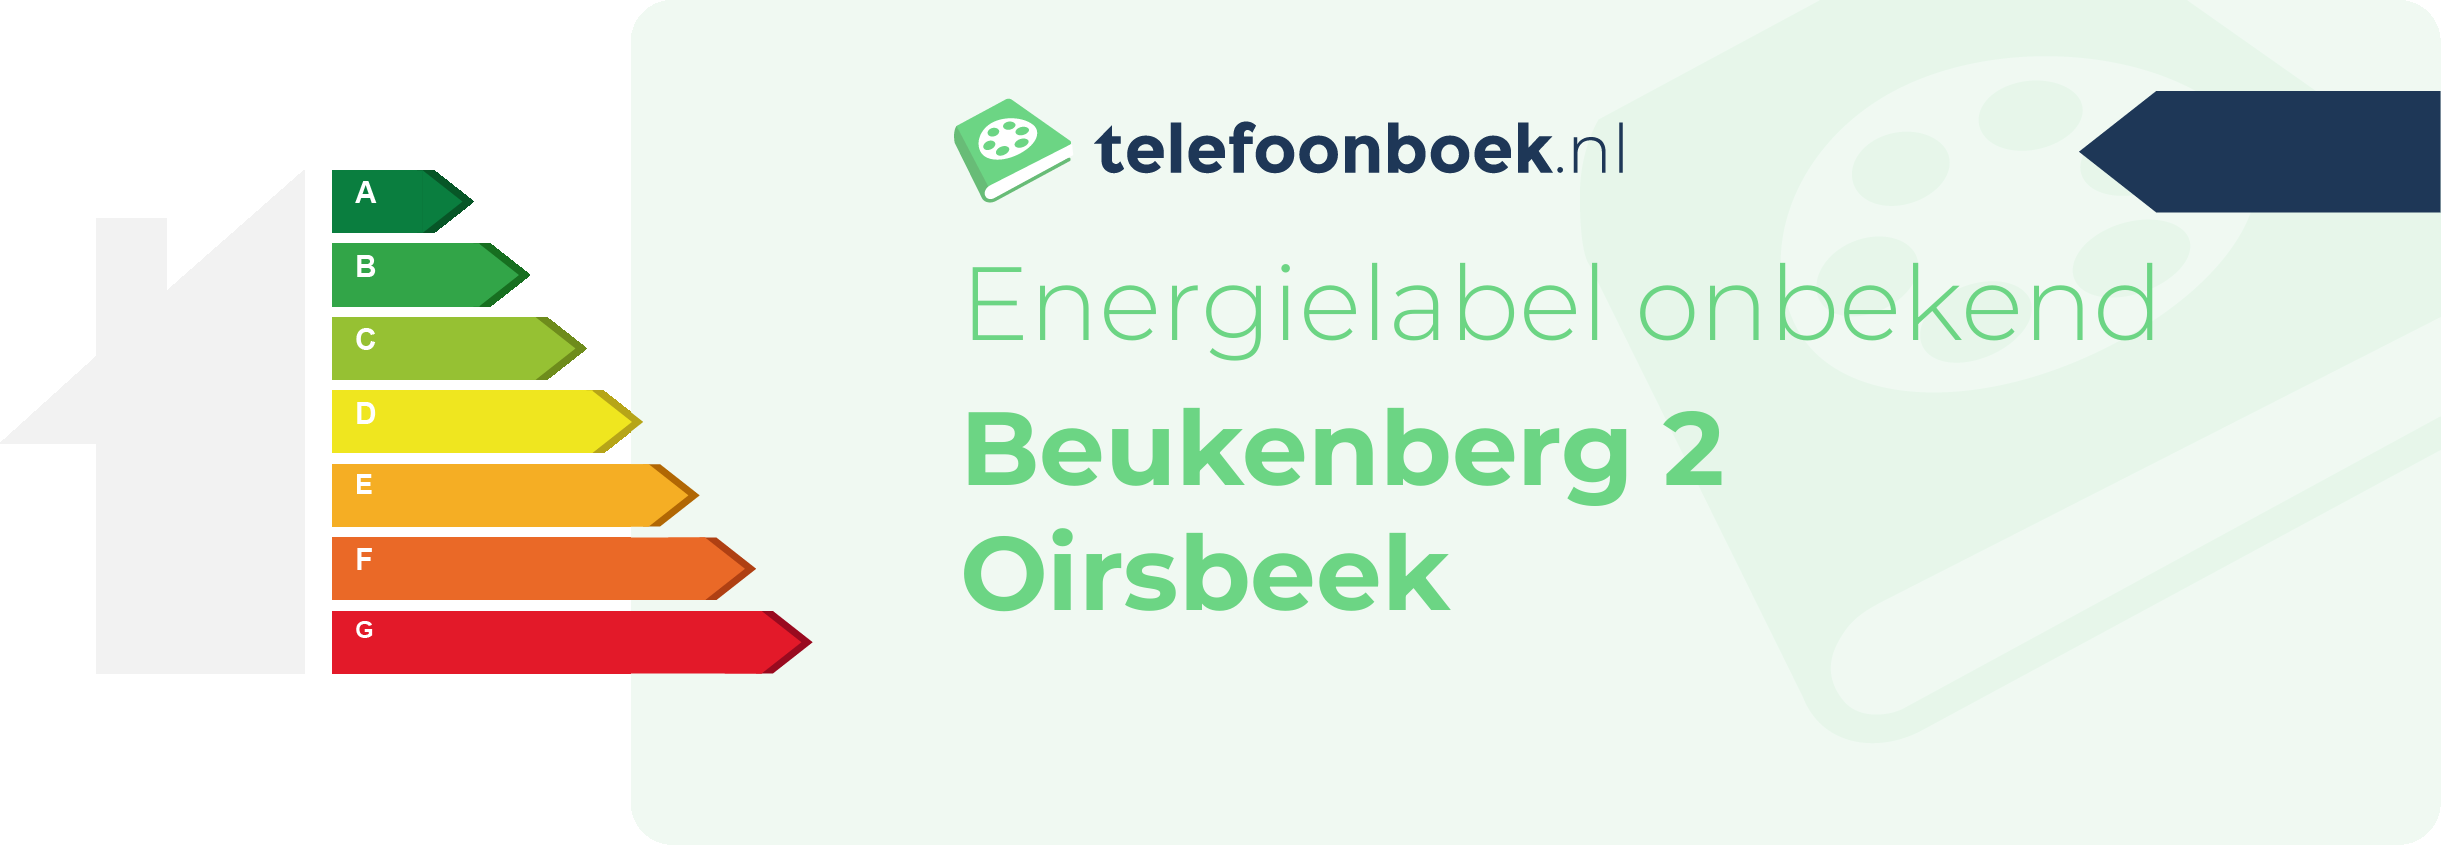 Energielabel Beukenberg 2 Oirsbeek